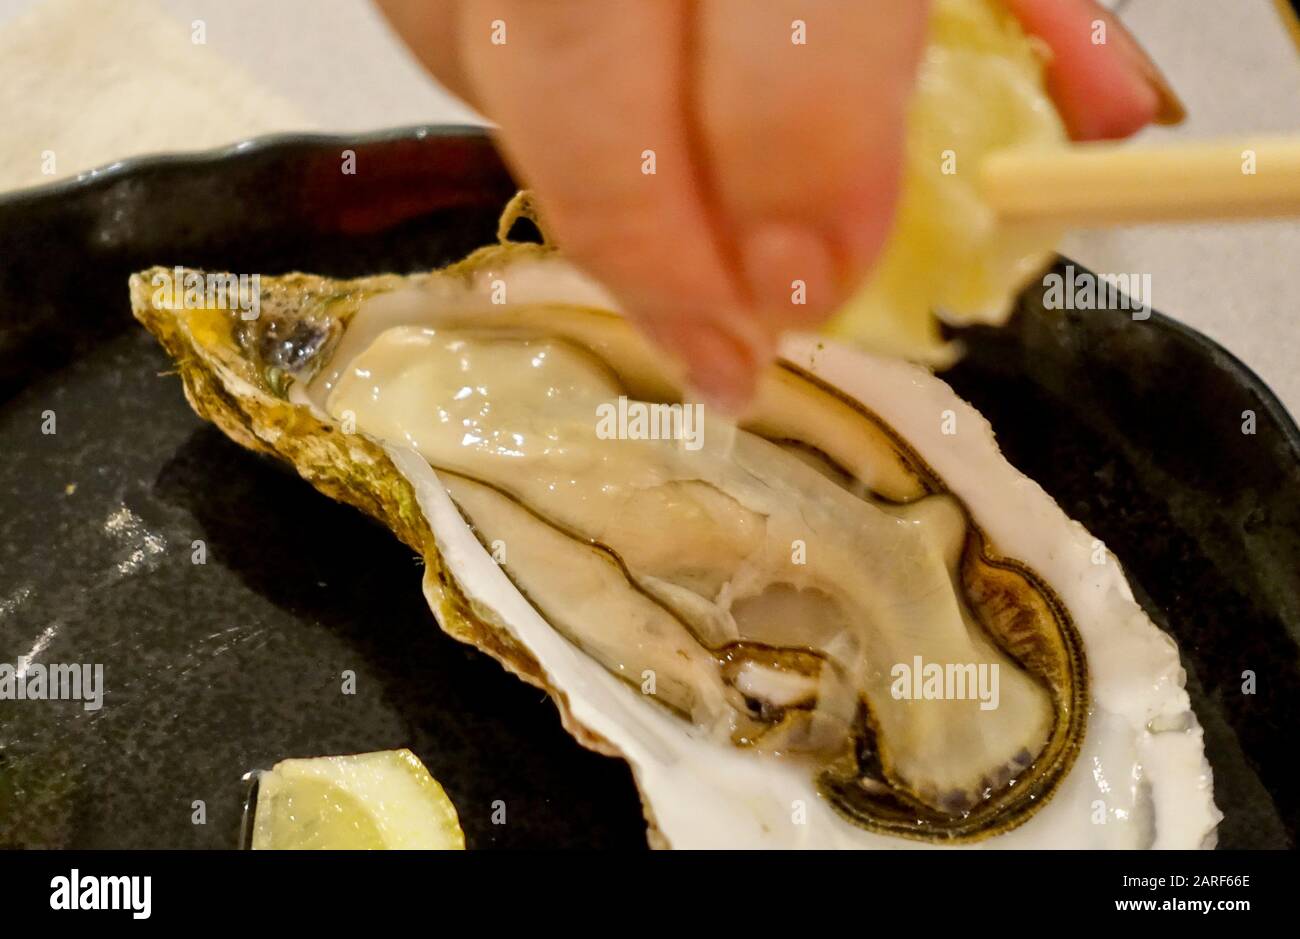 Austern ist ein Muscheln wie Schalentiere. Es ist schlank-aber schmackhaft, dass Briny Morsels überall Delikatessen sind. Hokkaidos Austern gehören zu den besten. Stockfoto